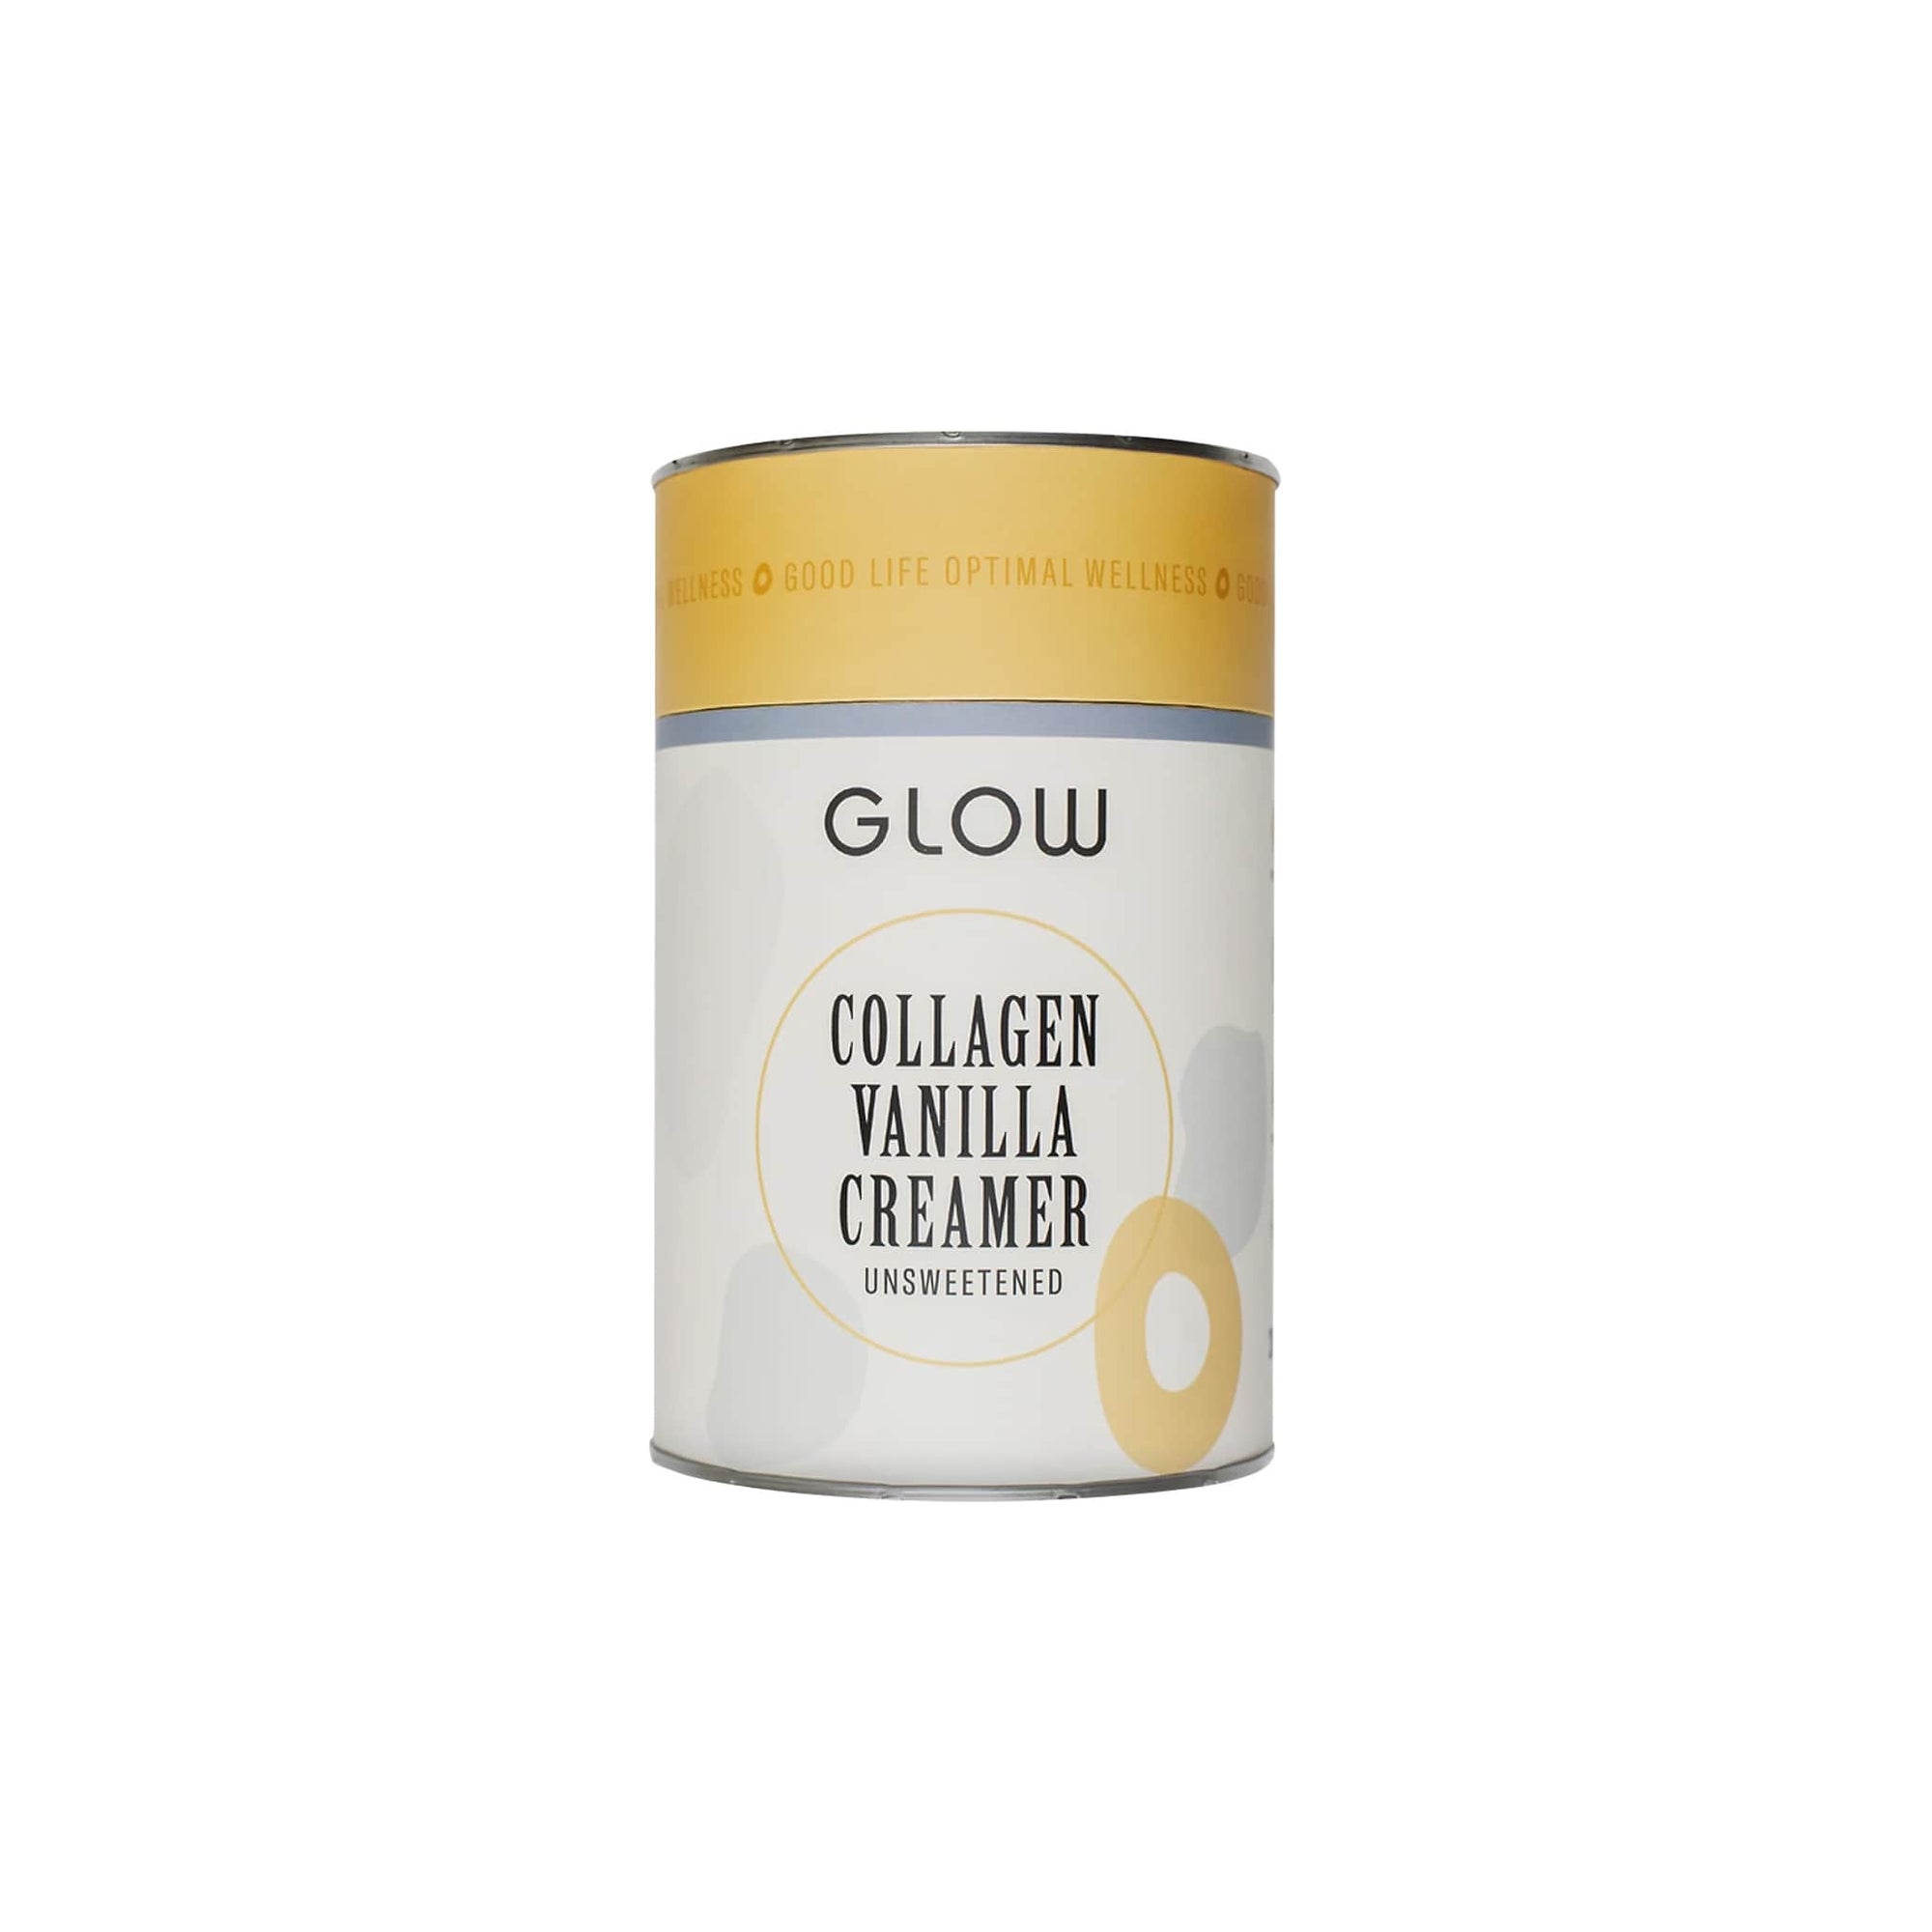 Glow Collagen Vanilla Creamer - Shop Online | Retail Box